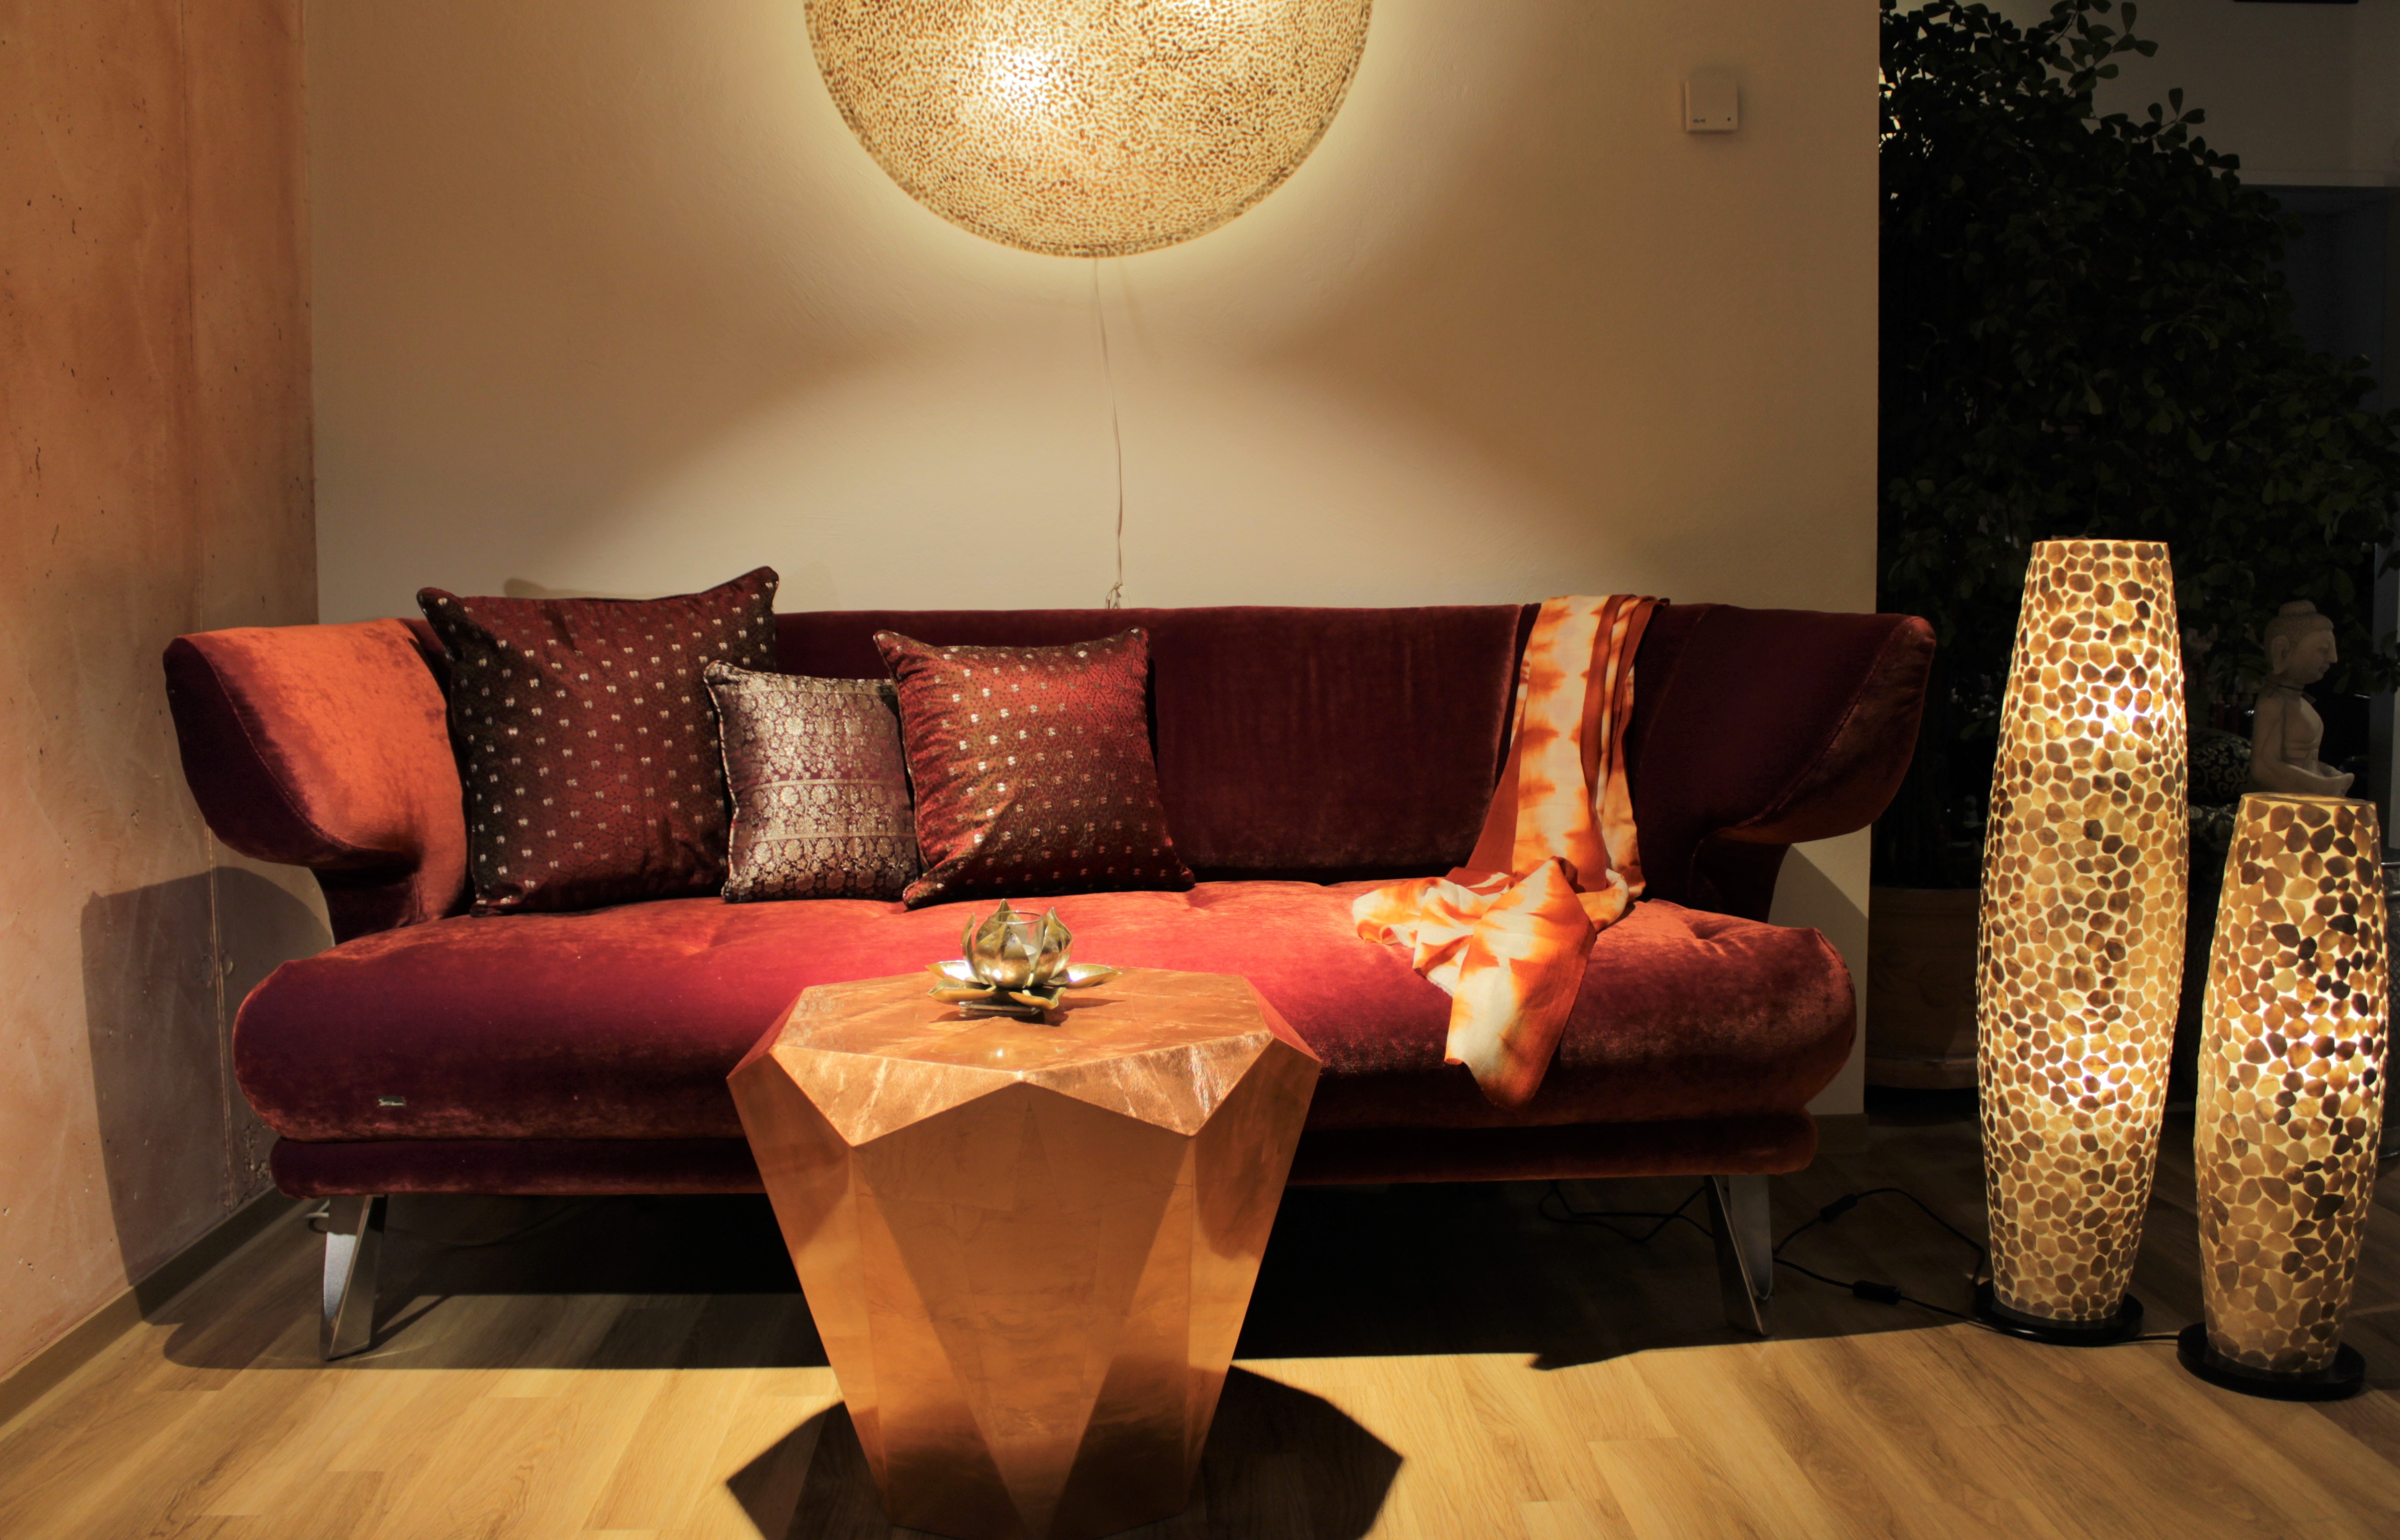 Sofa &amp; Tisch von Bretz,
Lampen aus Perlmutt
Kissen aus alten Saris